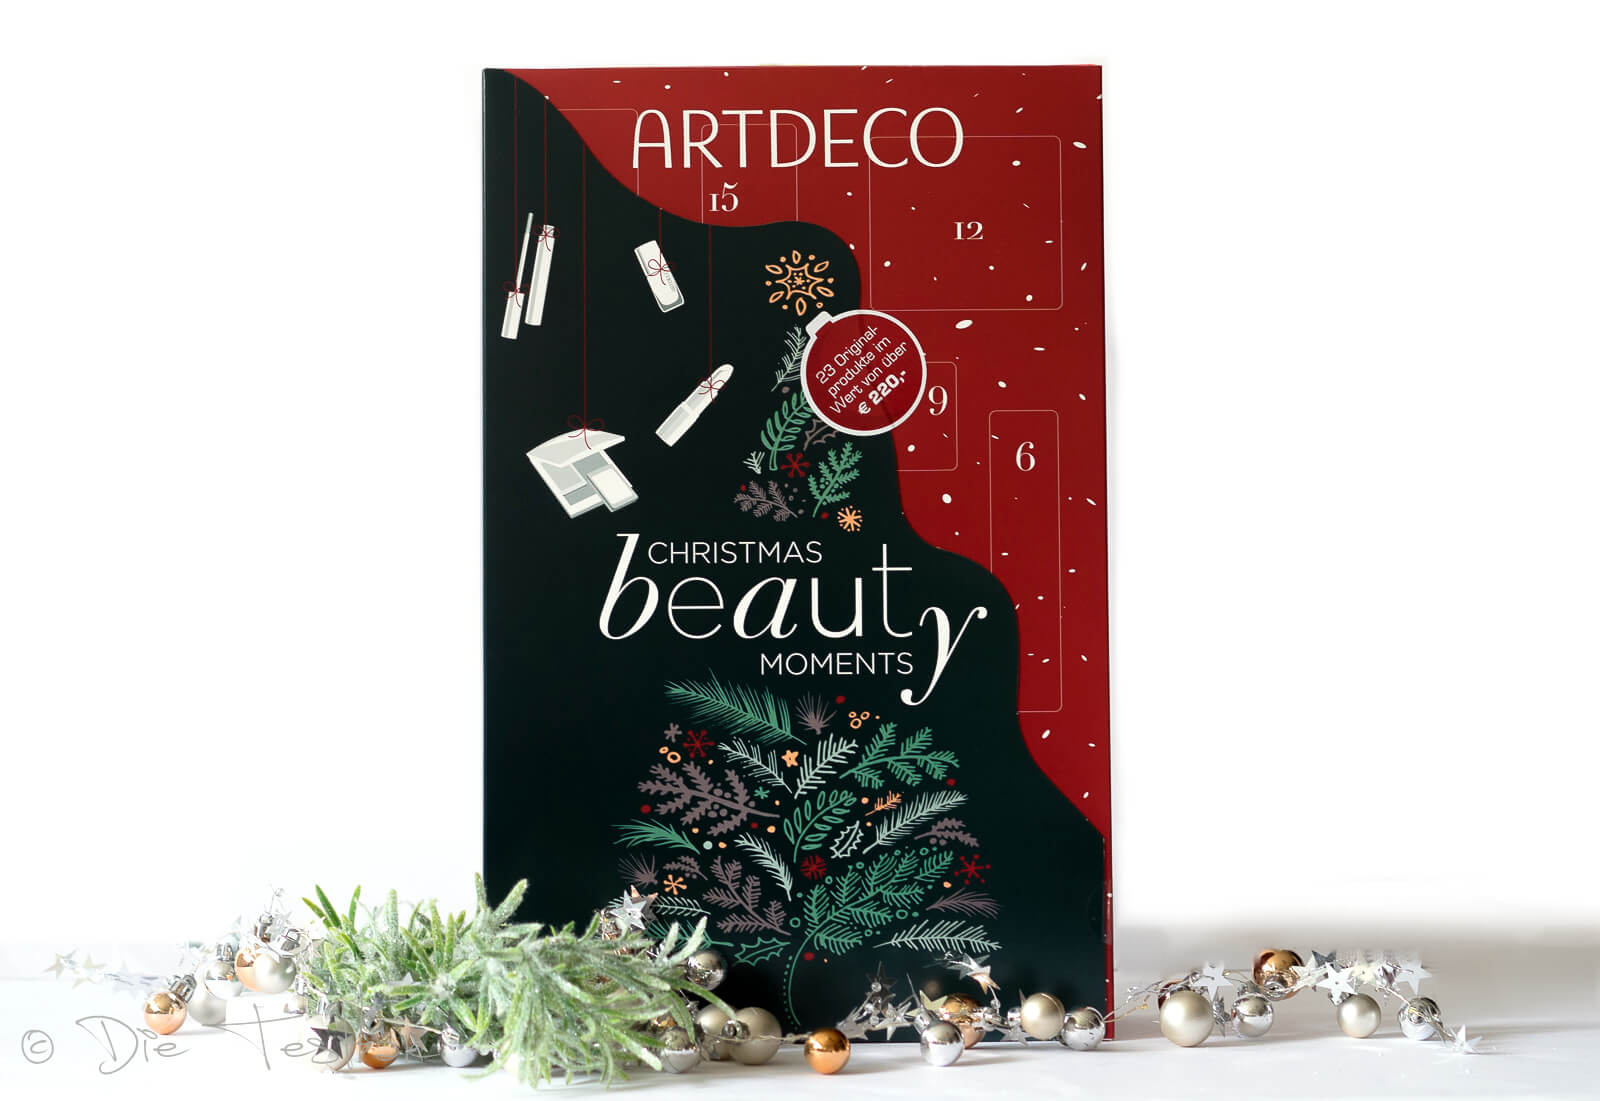 Gewinnspiel – 2 x 1 Limitierter Beauty Adventskalender 2021 von Artdeco zu gewinnen 2